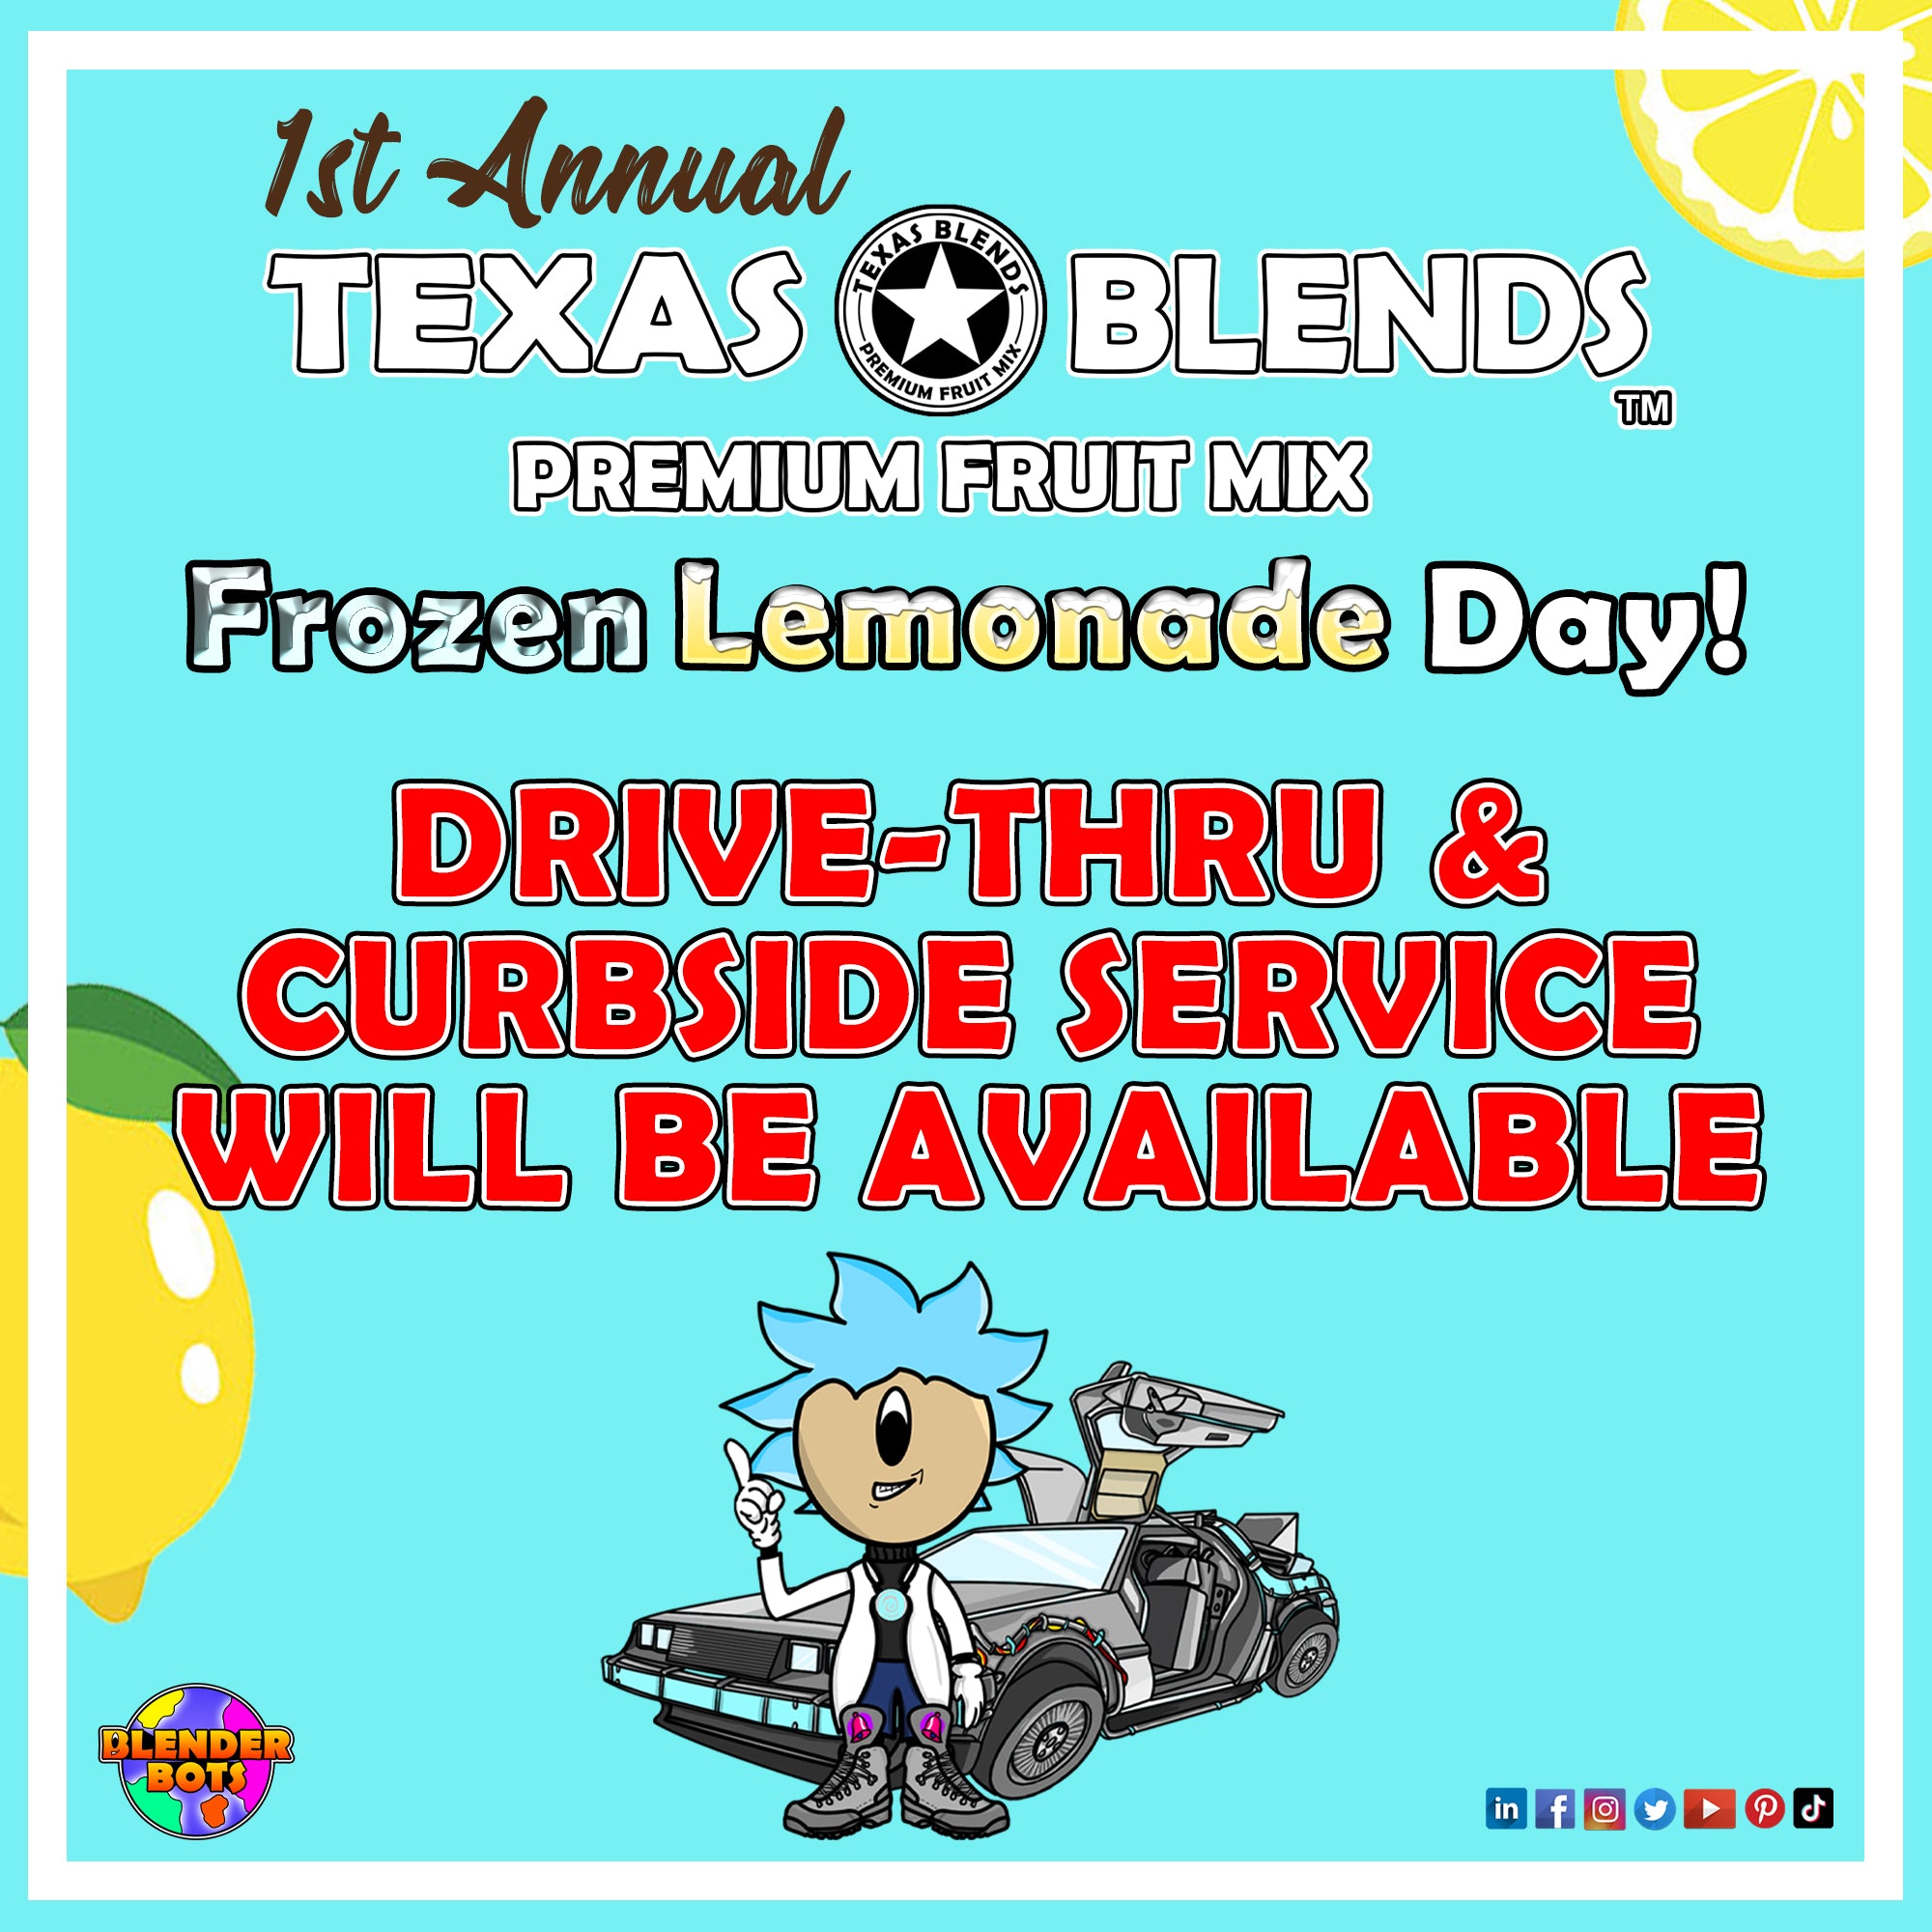 Texas Blends Frozen Lemonade Day